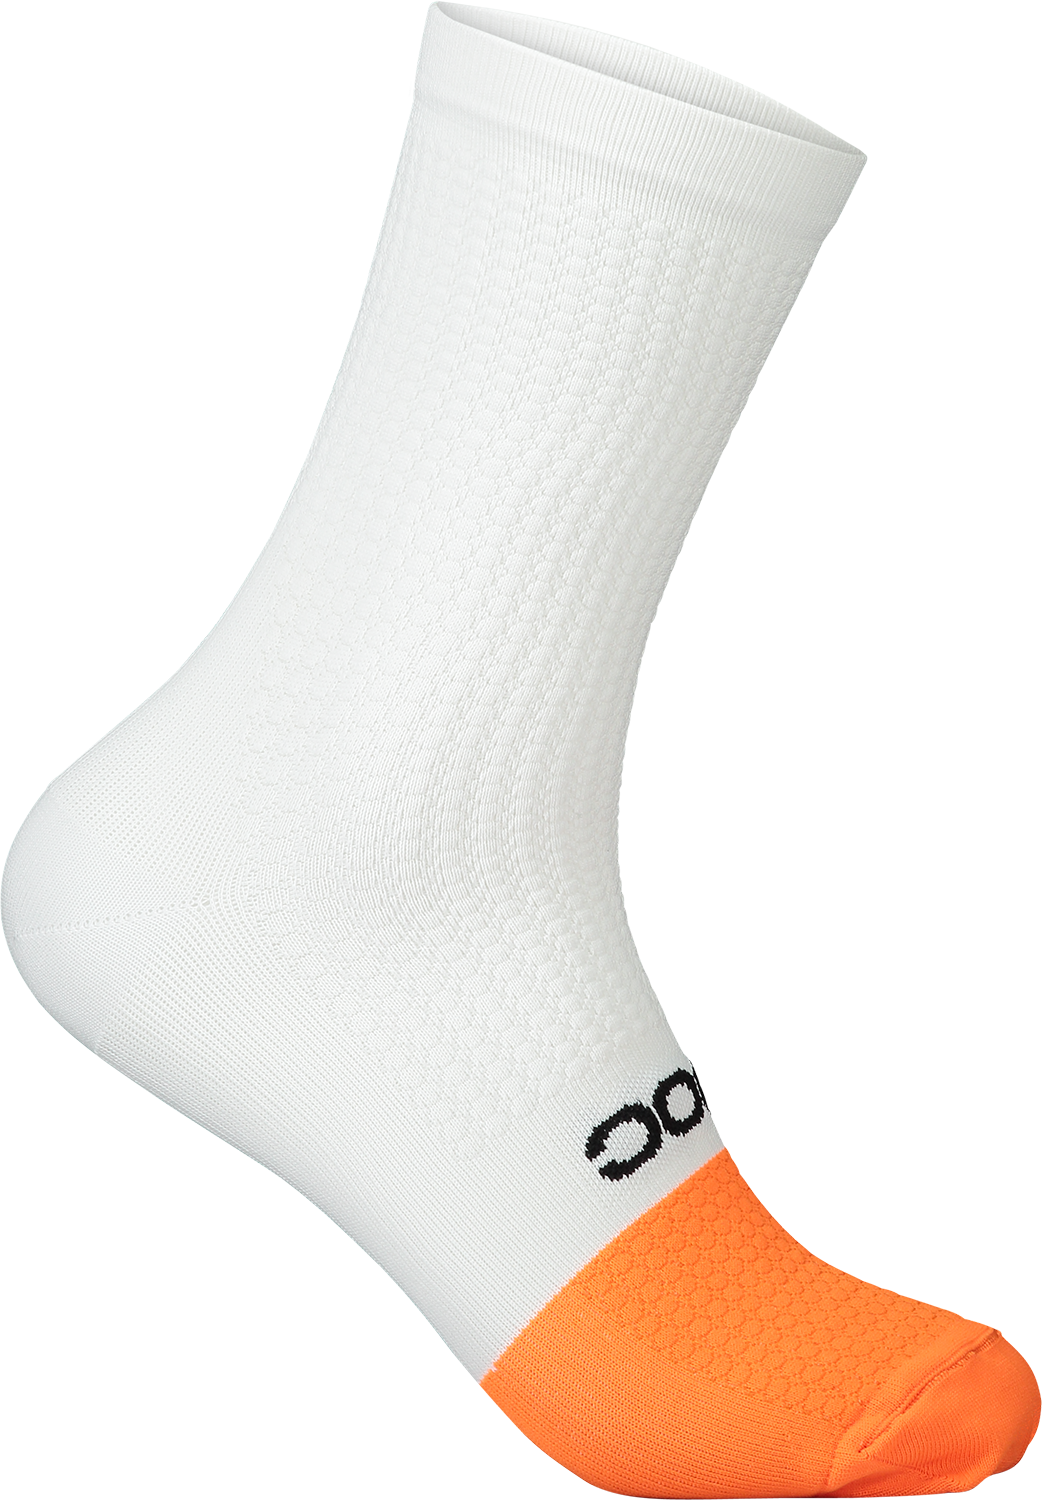 Flair Sock Mid Hydrogen White/Zink Orange